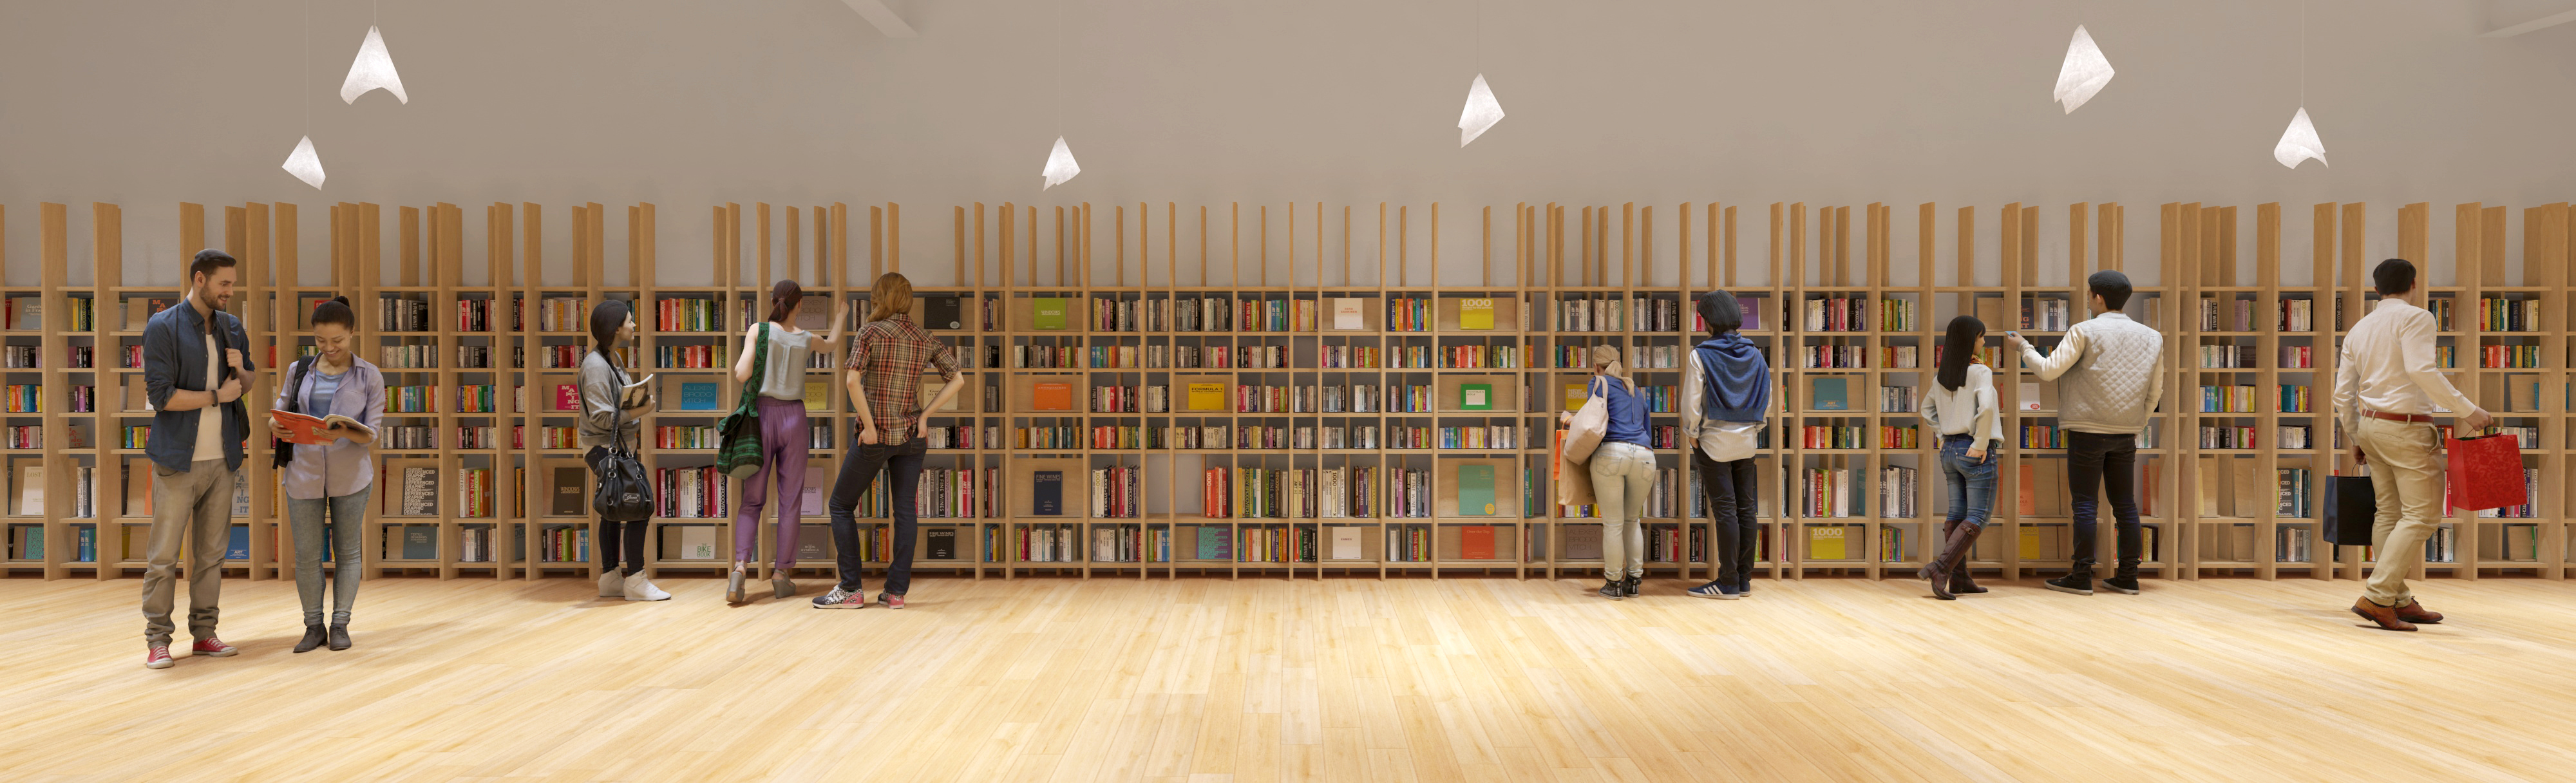 みんなで 武蔵野の本棚 をつくろう 角川武蔵野ミュージアムの 木工教室 が所沢で盛況に開催 株式会社kadokawaのプレスリリース